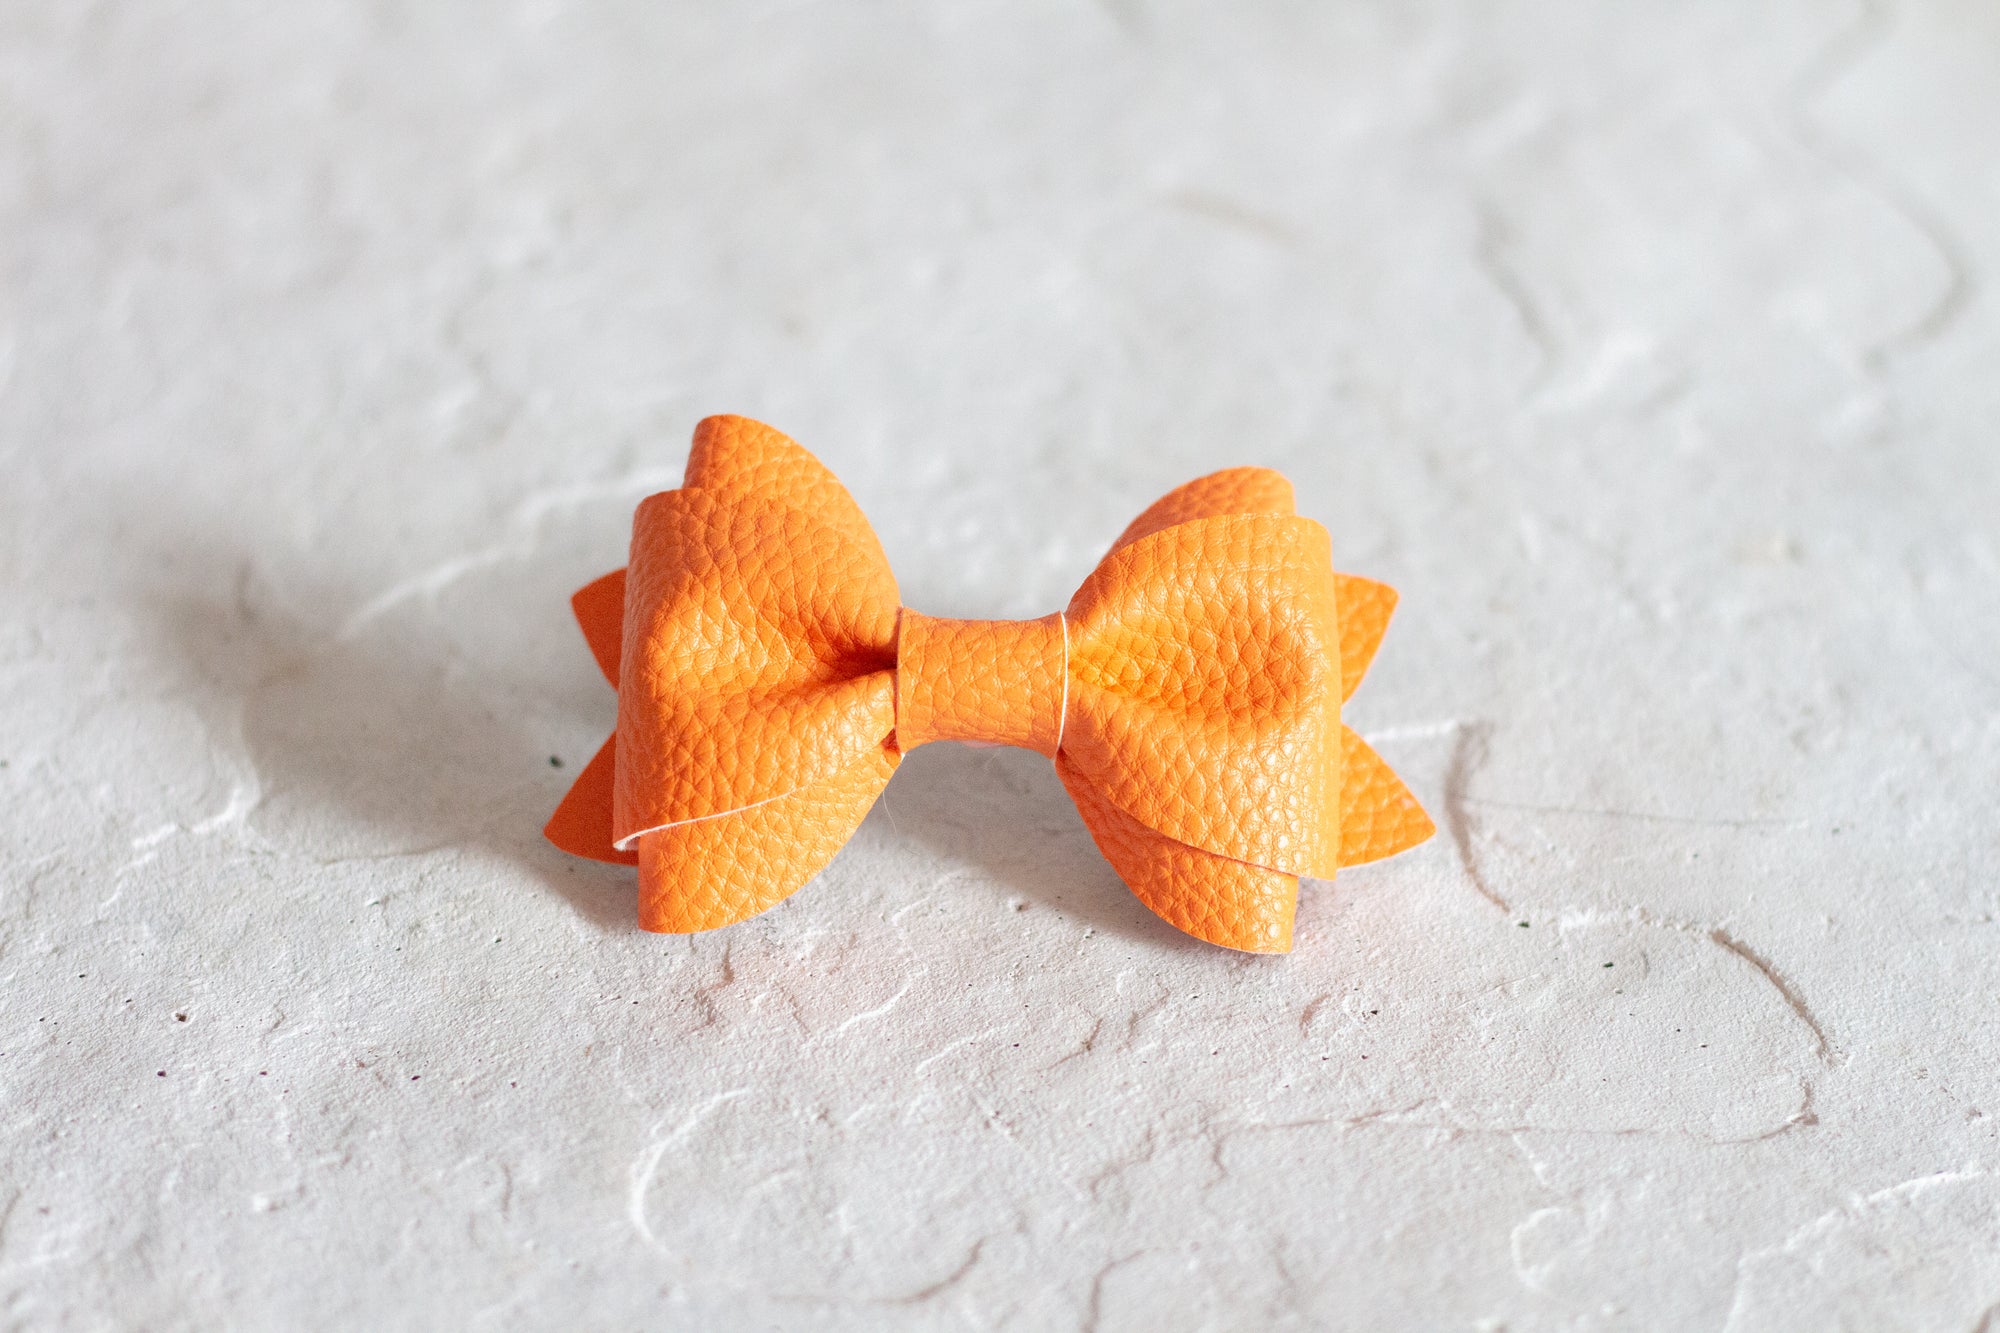 Orange Bow Tie